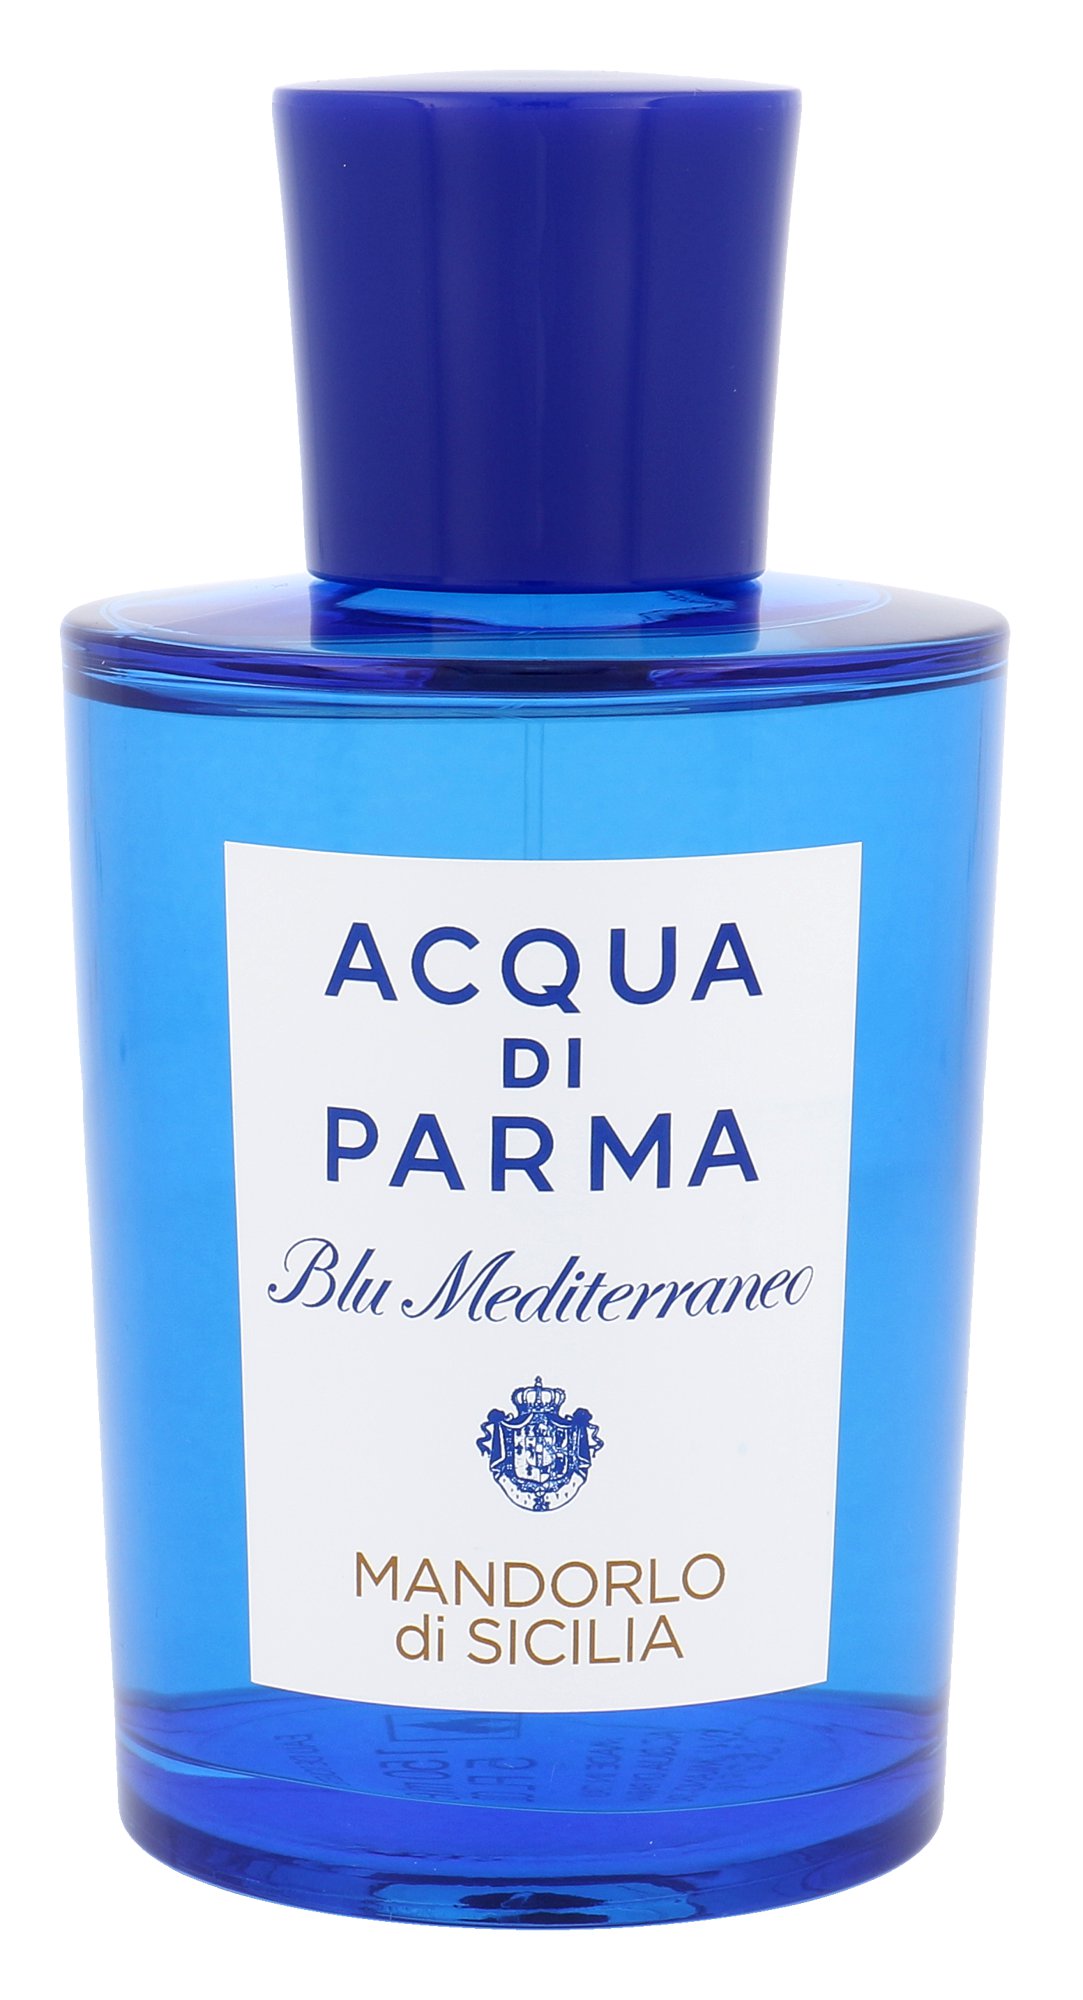 Acqua di Parma Blu Mediterraneo Mandorlo di Sicilia, edt 150ml